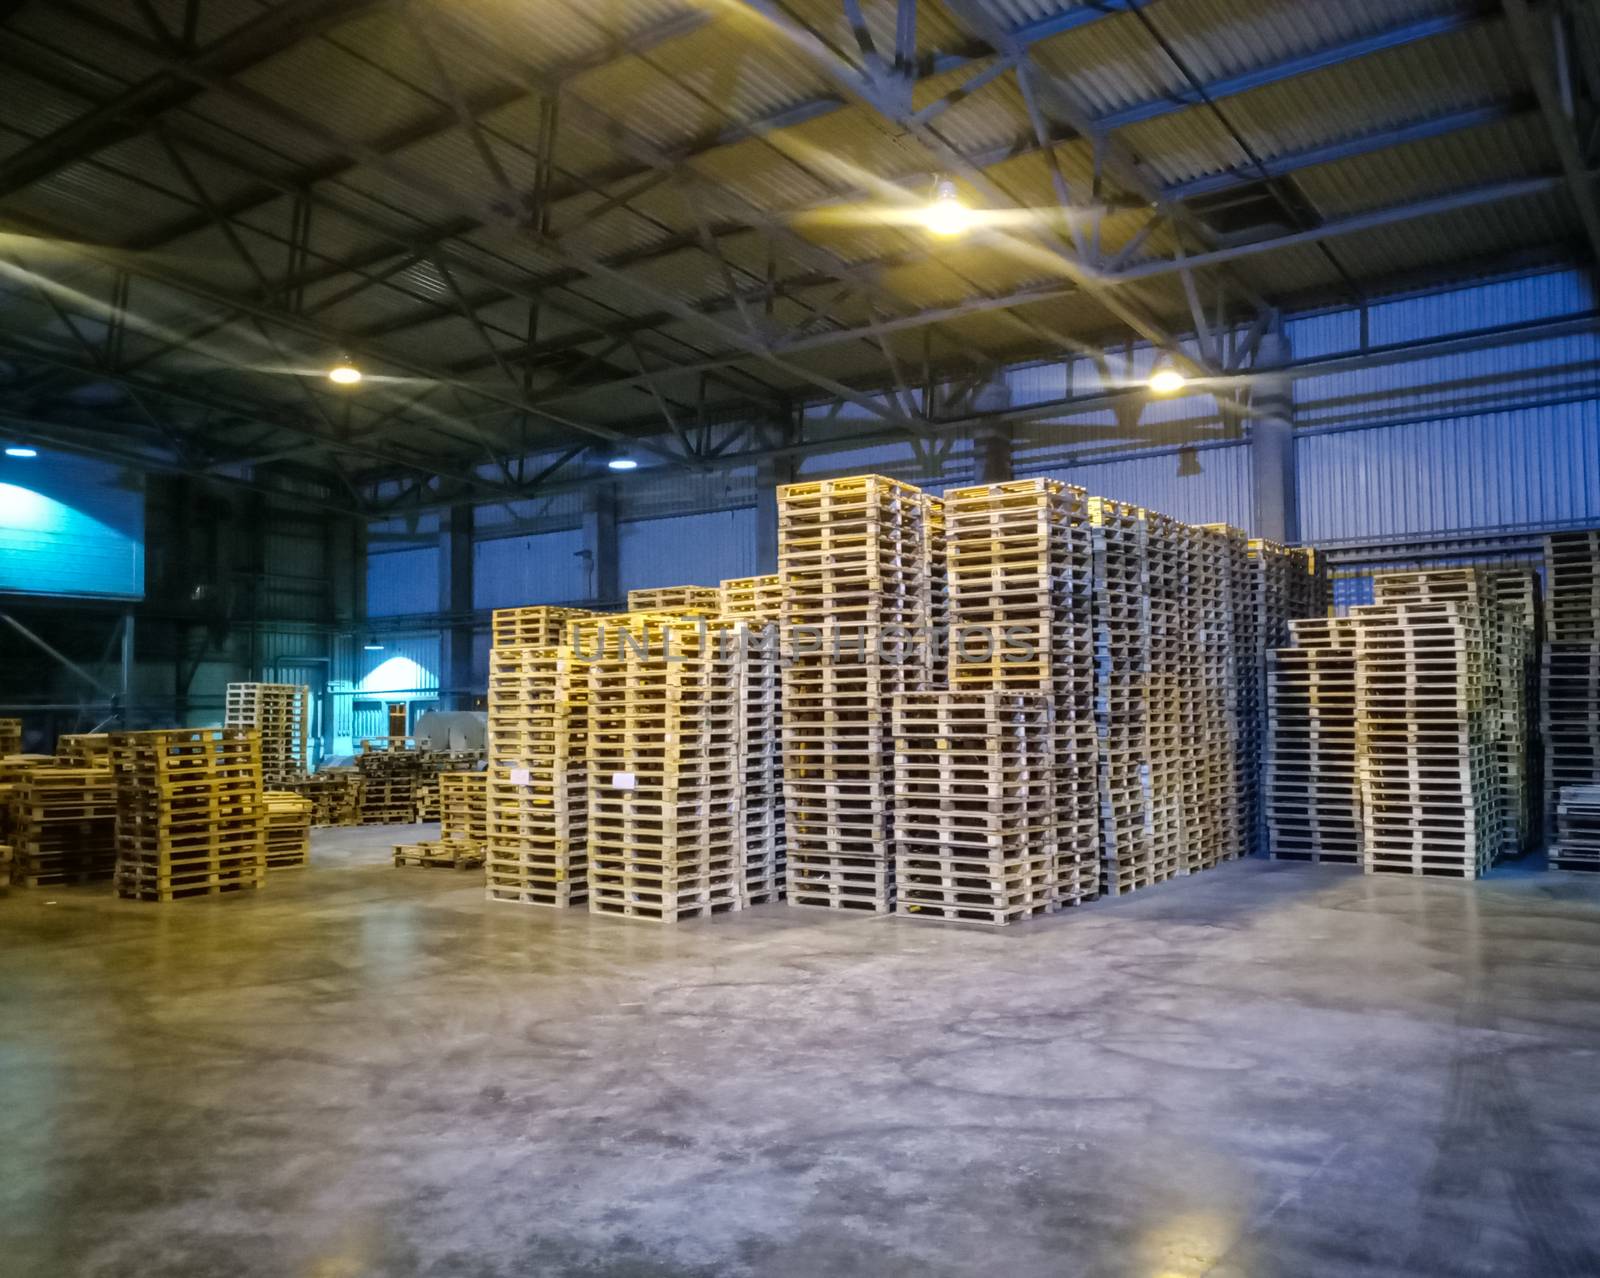 Pallet racks inside a cement plant. Loading shop of a cement plant.